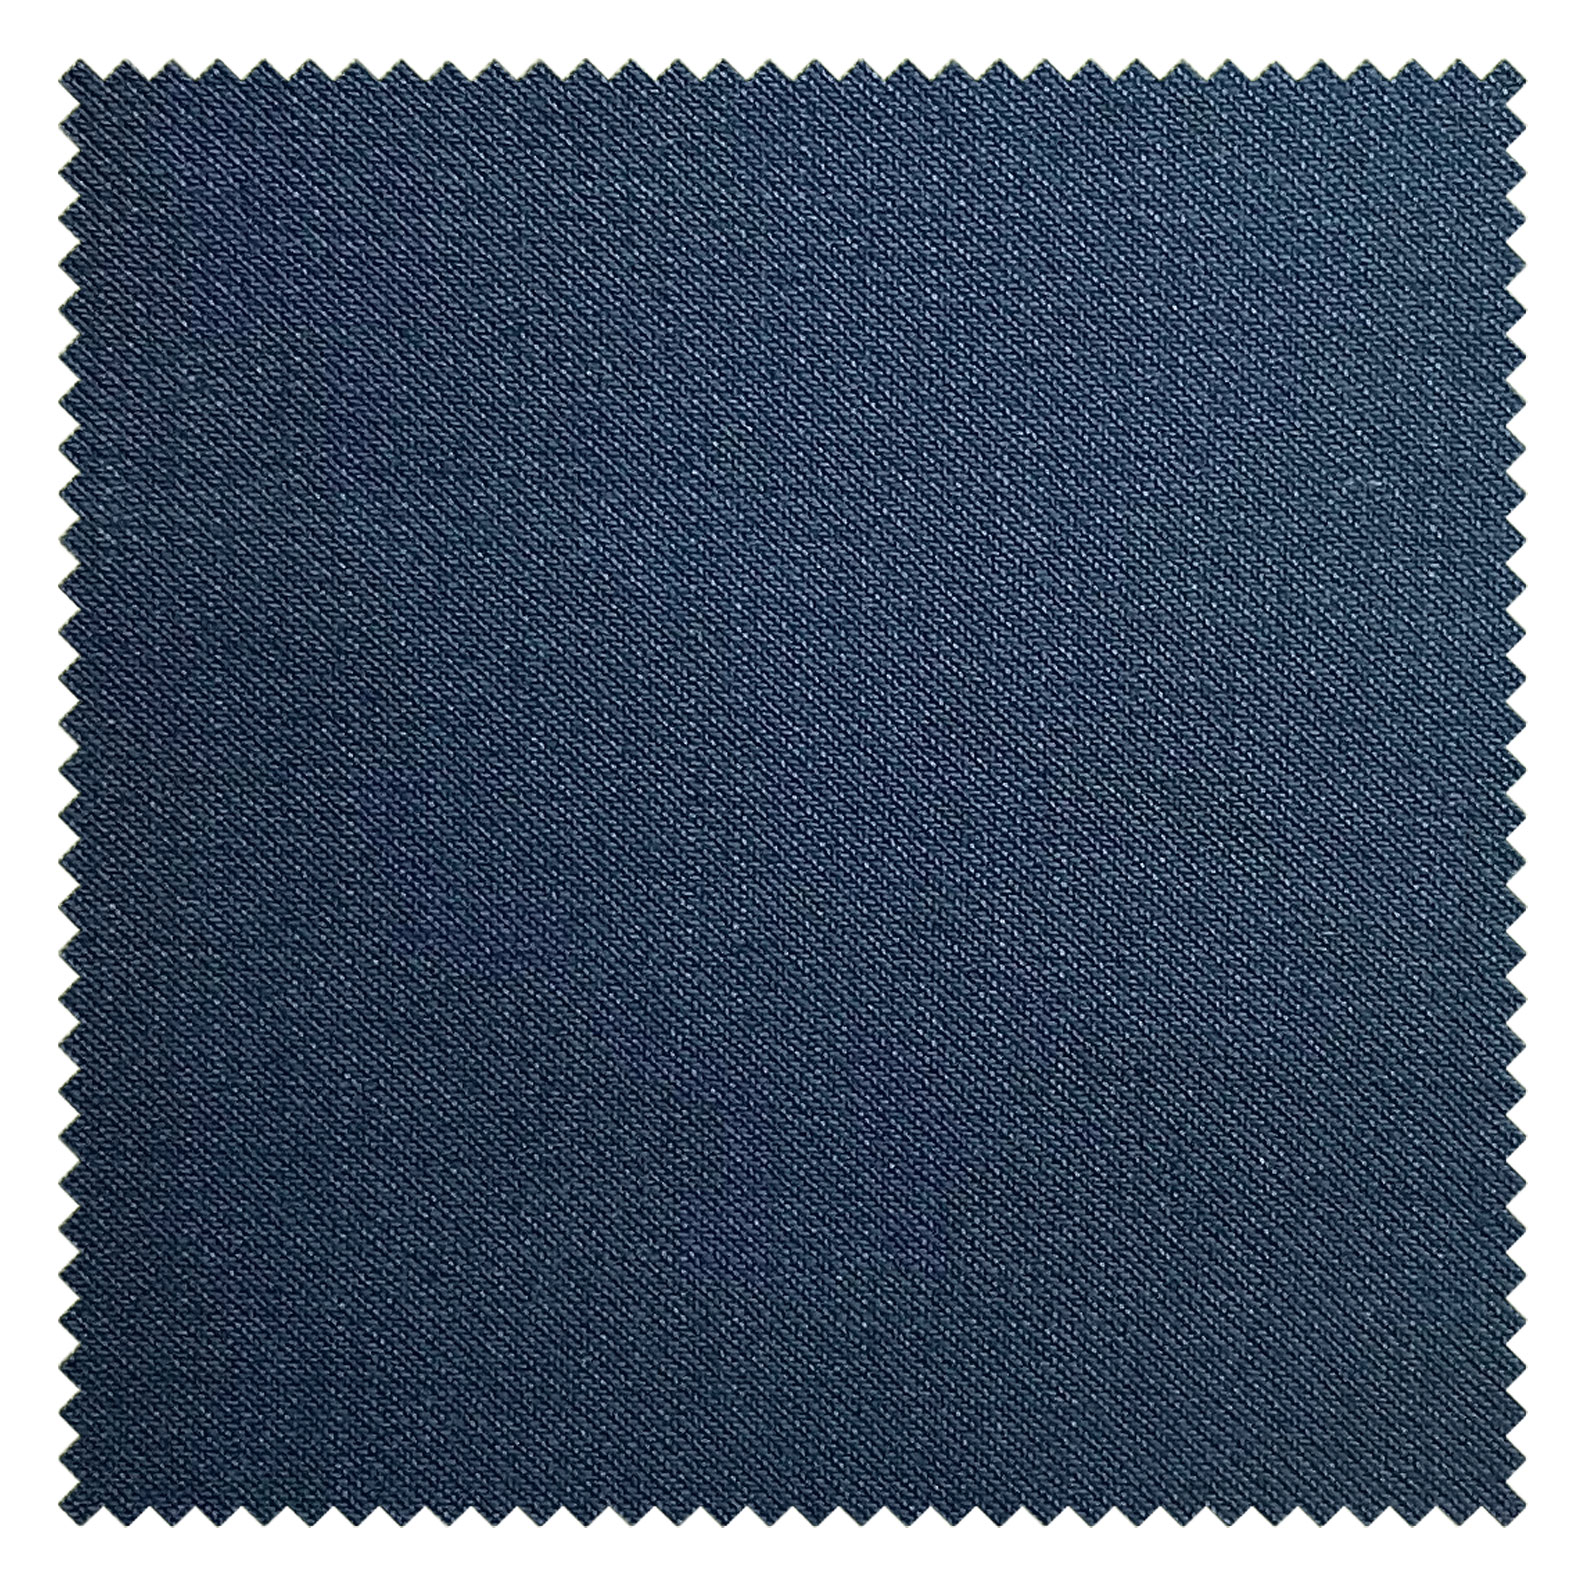 KINGMAN Cashmere Wool Fabric Royal Elegant SAILOR BLUE ผ้าตัดชุดสูท สีฟ้าอมเขียว กางเกง ผู้ชาย ผ้าตัดเสื้อ ยูนิฟอร์ม ผ้าวูล ผ้าคุณภาพดี กว้าง 60 นิ้ว ยาว 1 เมตร